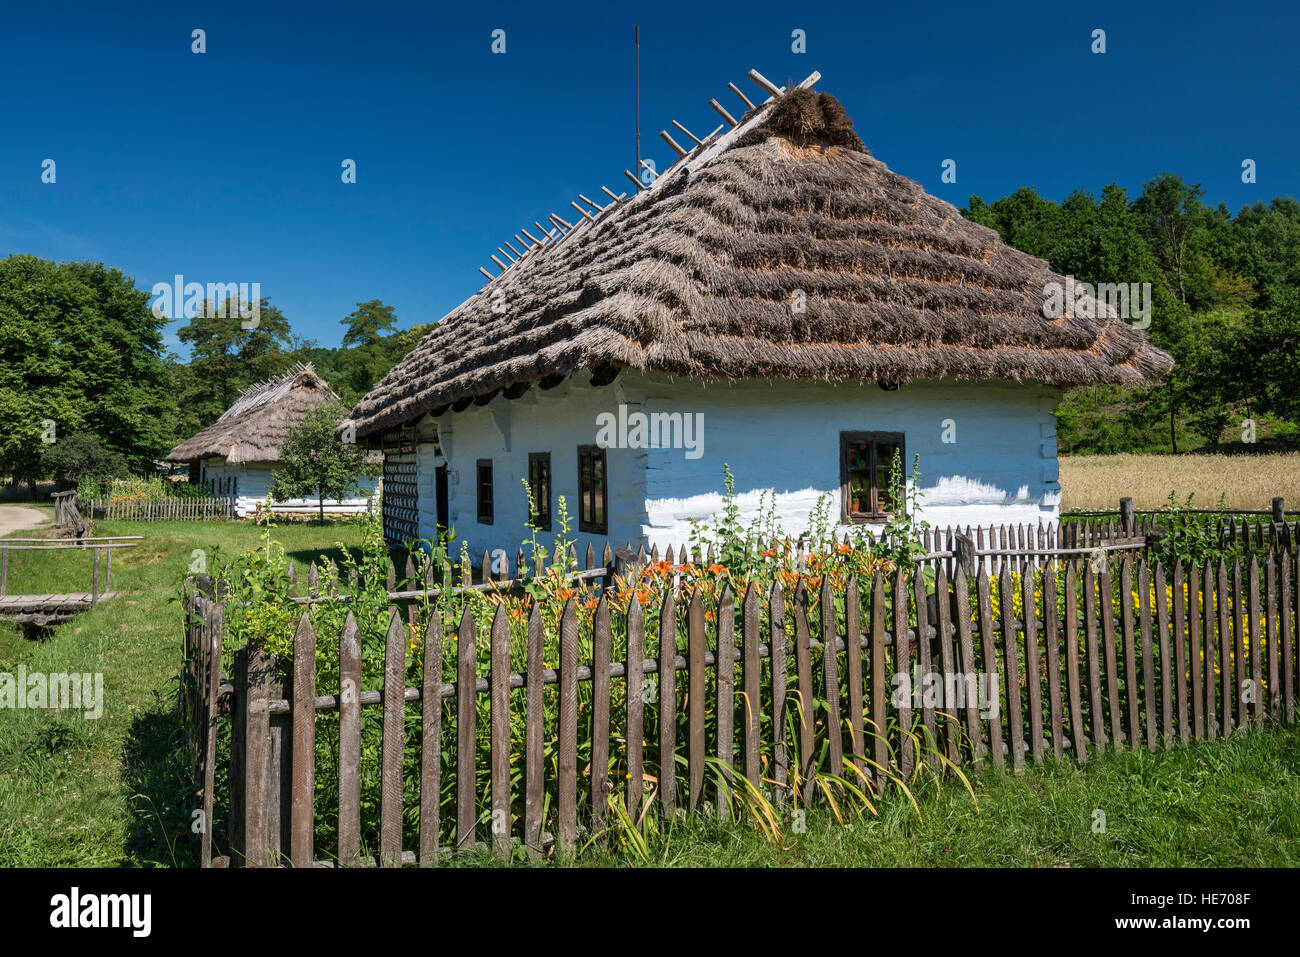 Potter's Farmstead, von Rzepiennik Strzyzewski, Volksgruppe Pogorzanie, Museum für ländliche Architektur in Sanok, Polen Stockfoto